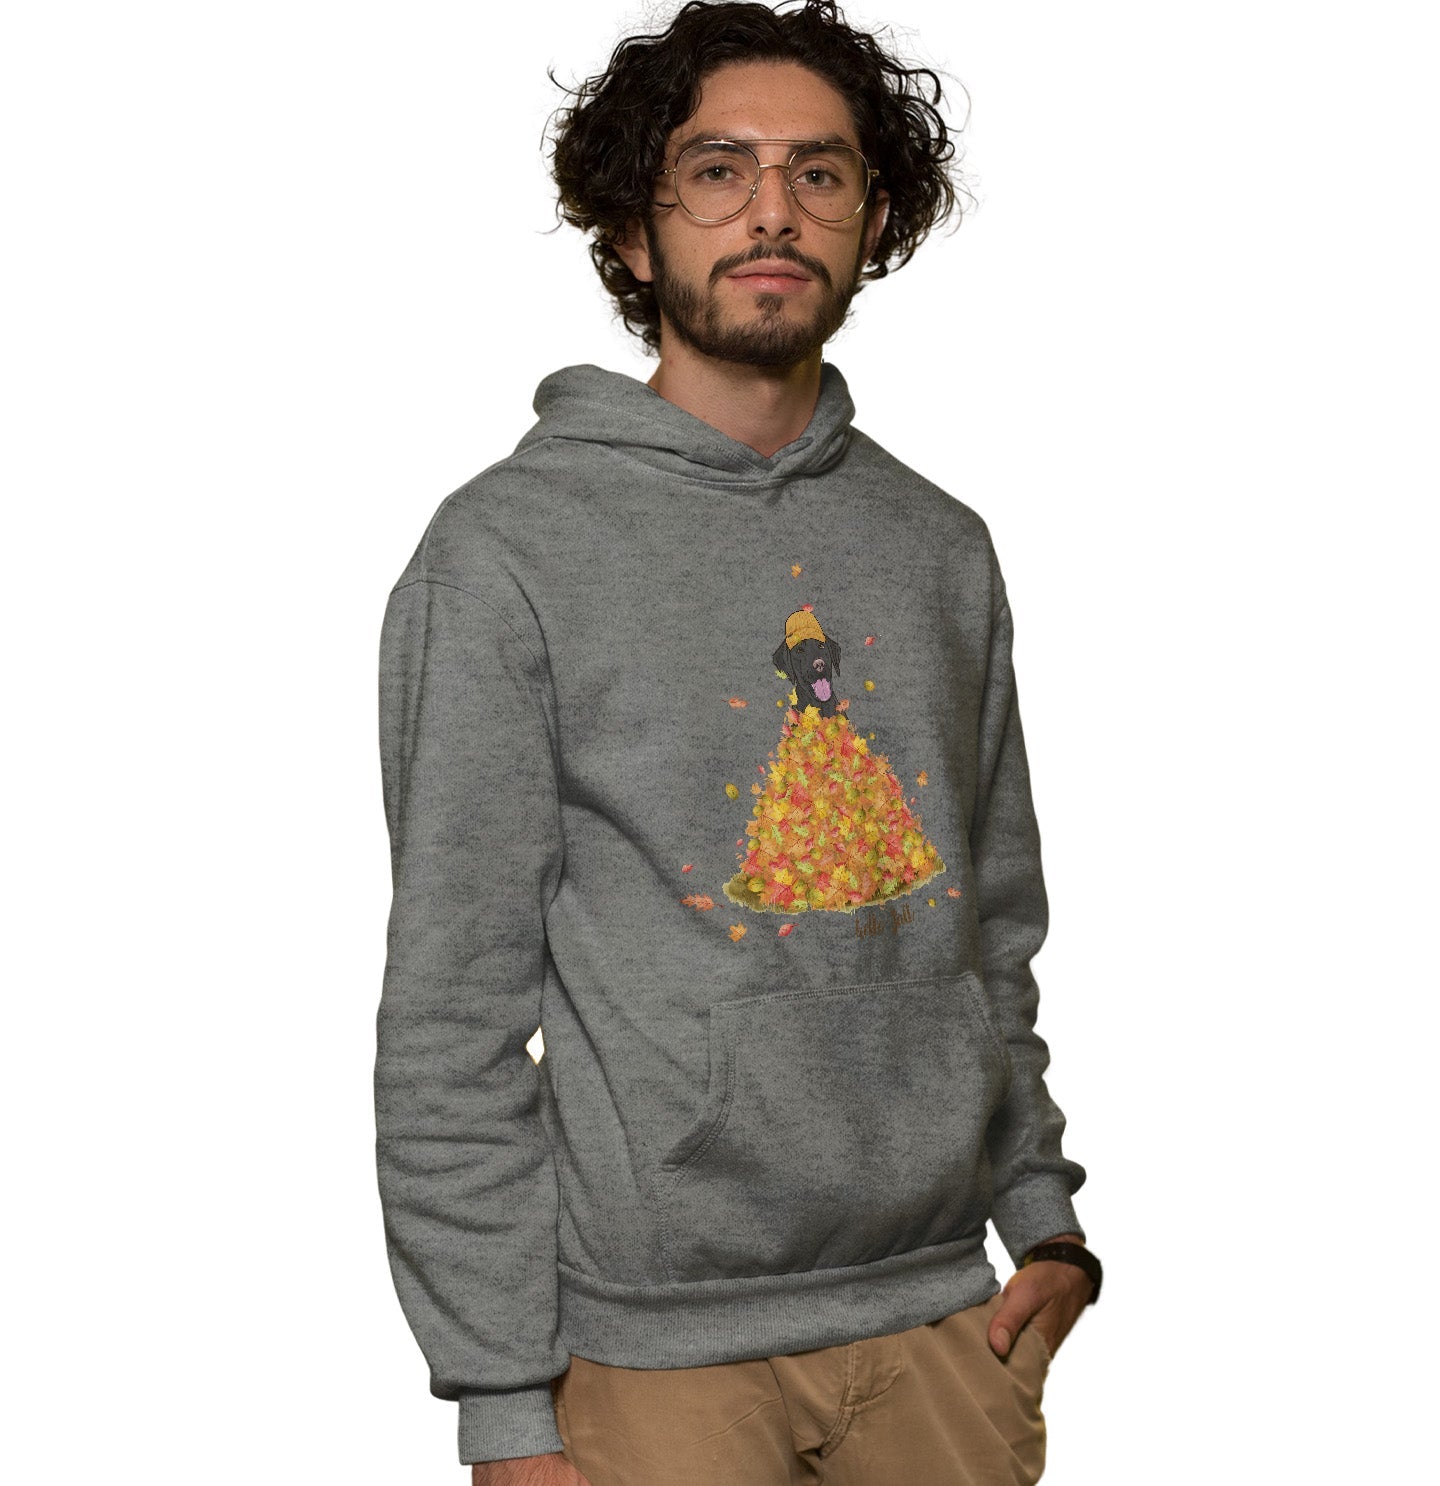 Leaf Pile and Black Lab - Adult Unisex Hoodie Sweatshirt